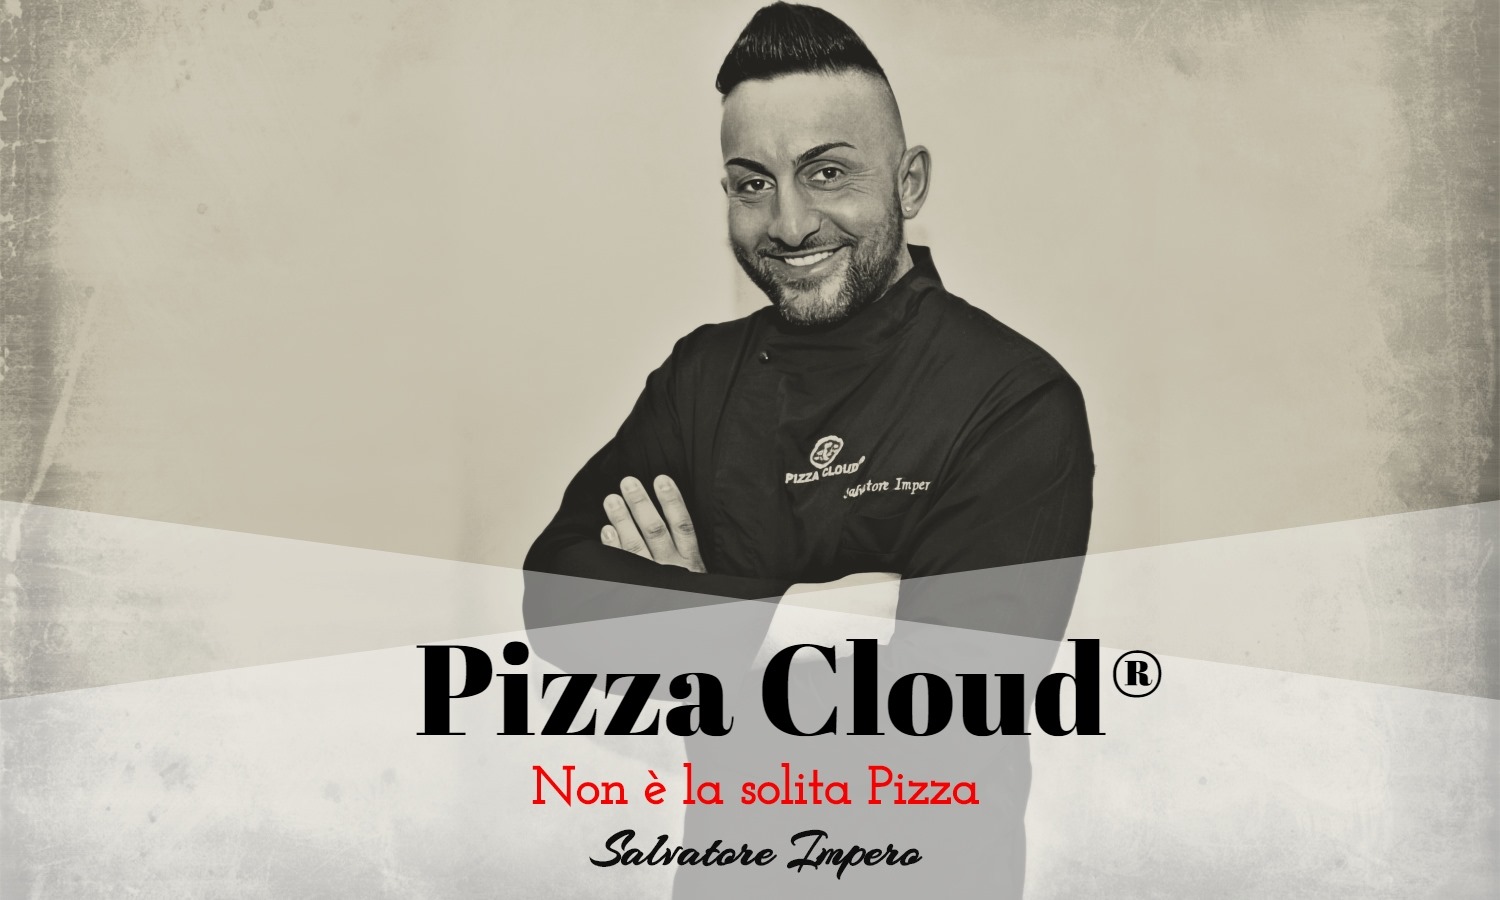 Pizza Cloud, “Non è la solita Pizza”